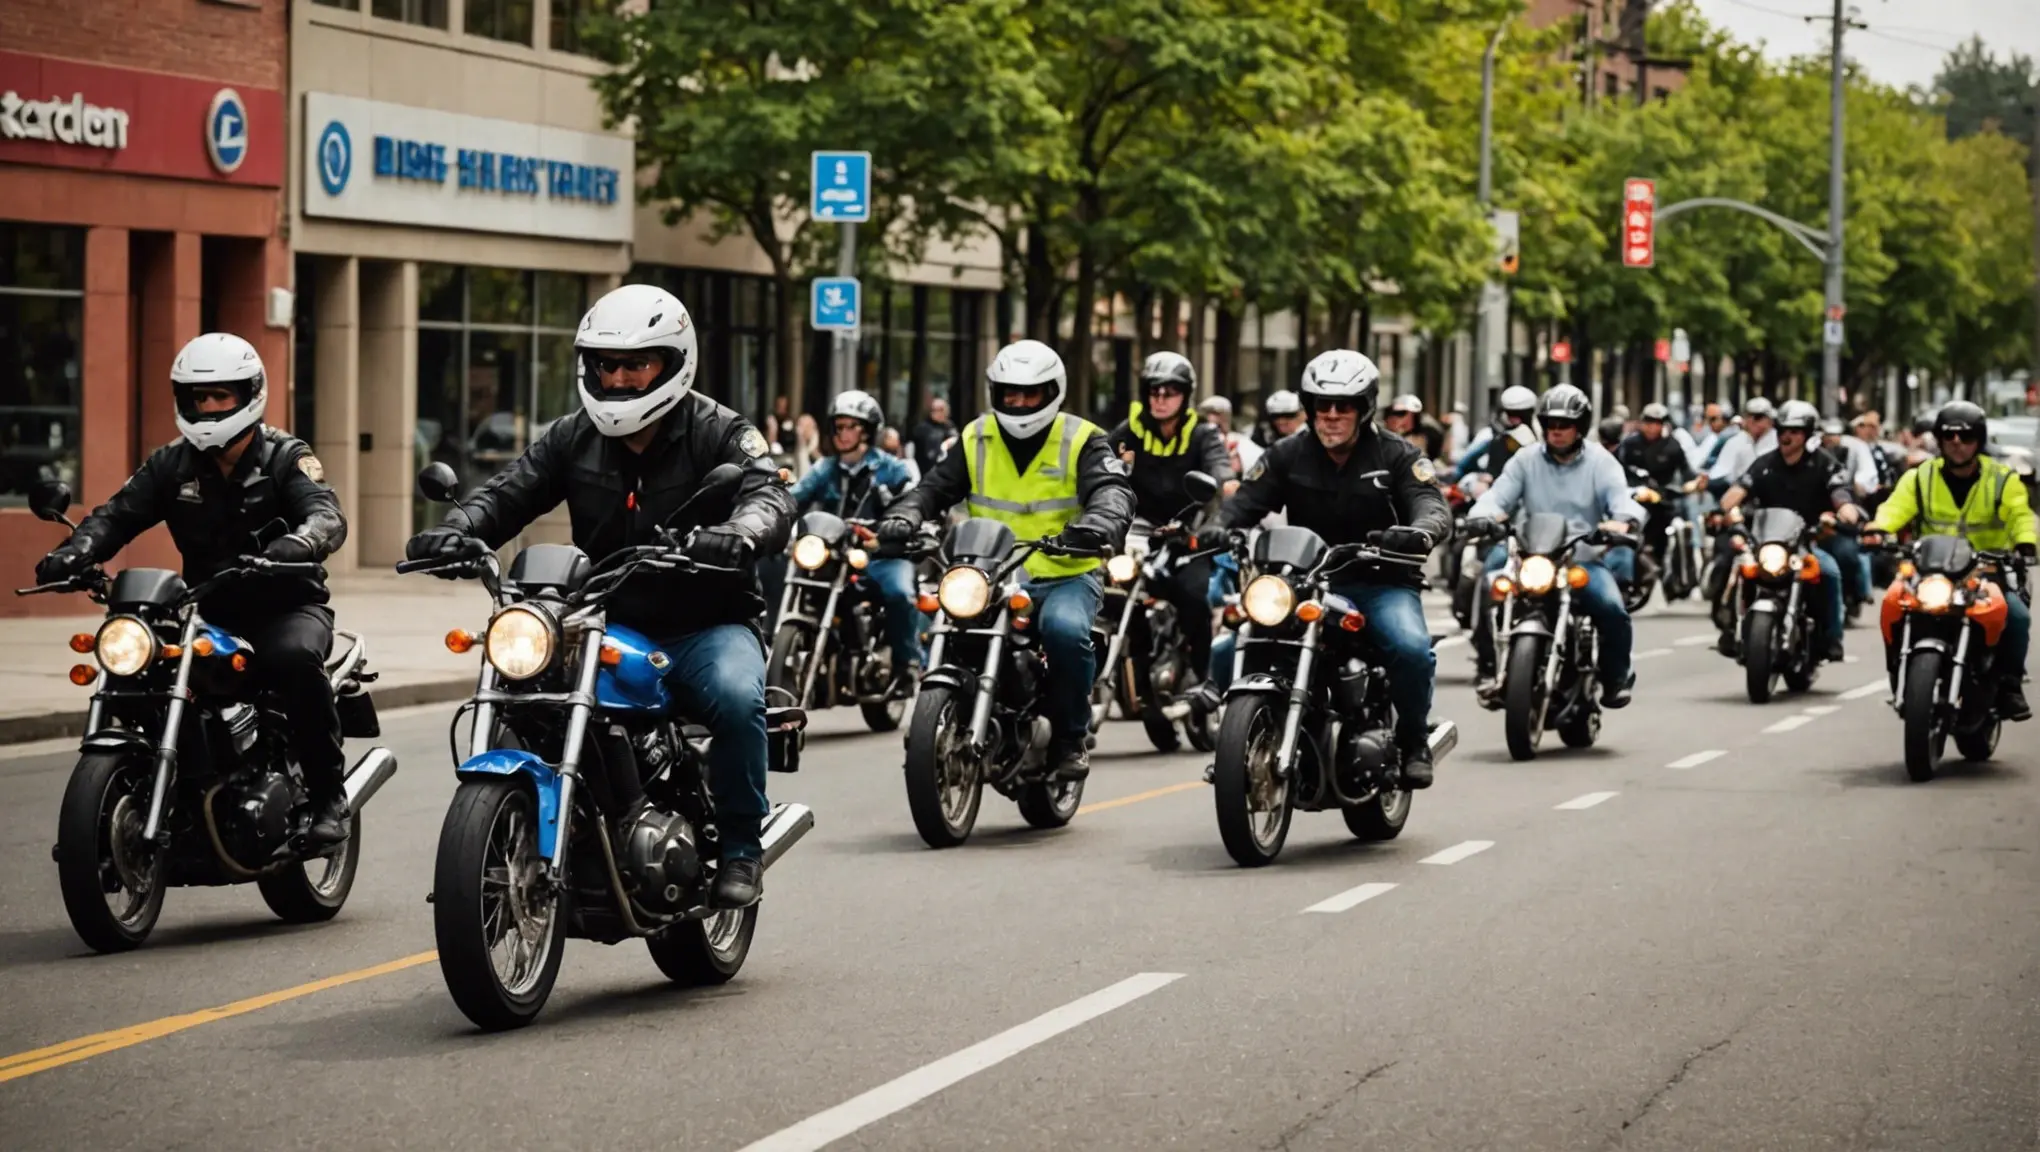 Motociclistas, Preparem-se para Dominar as Leis de Trânsito!